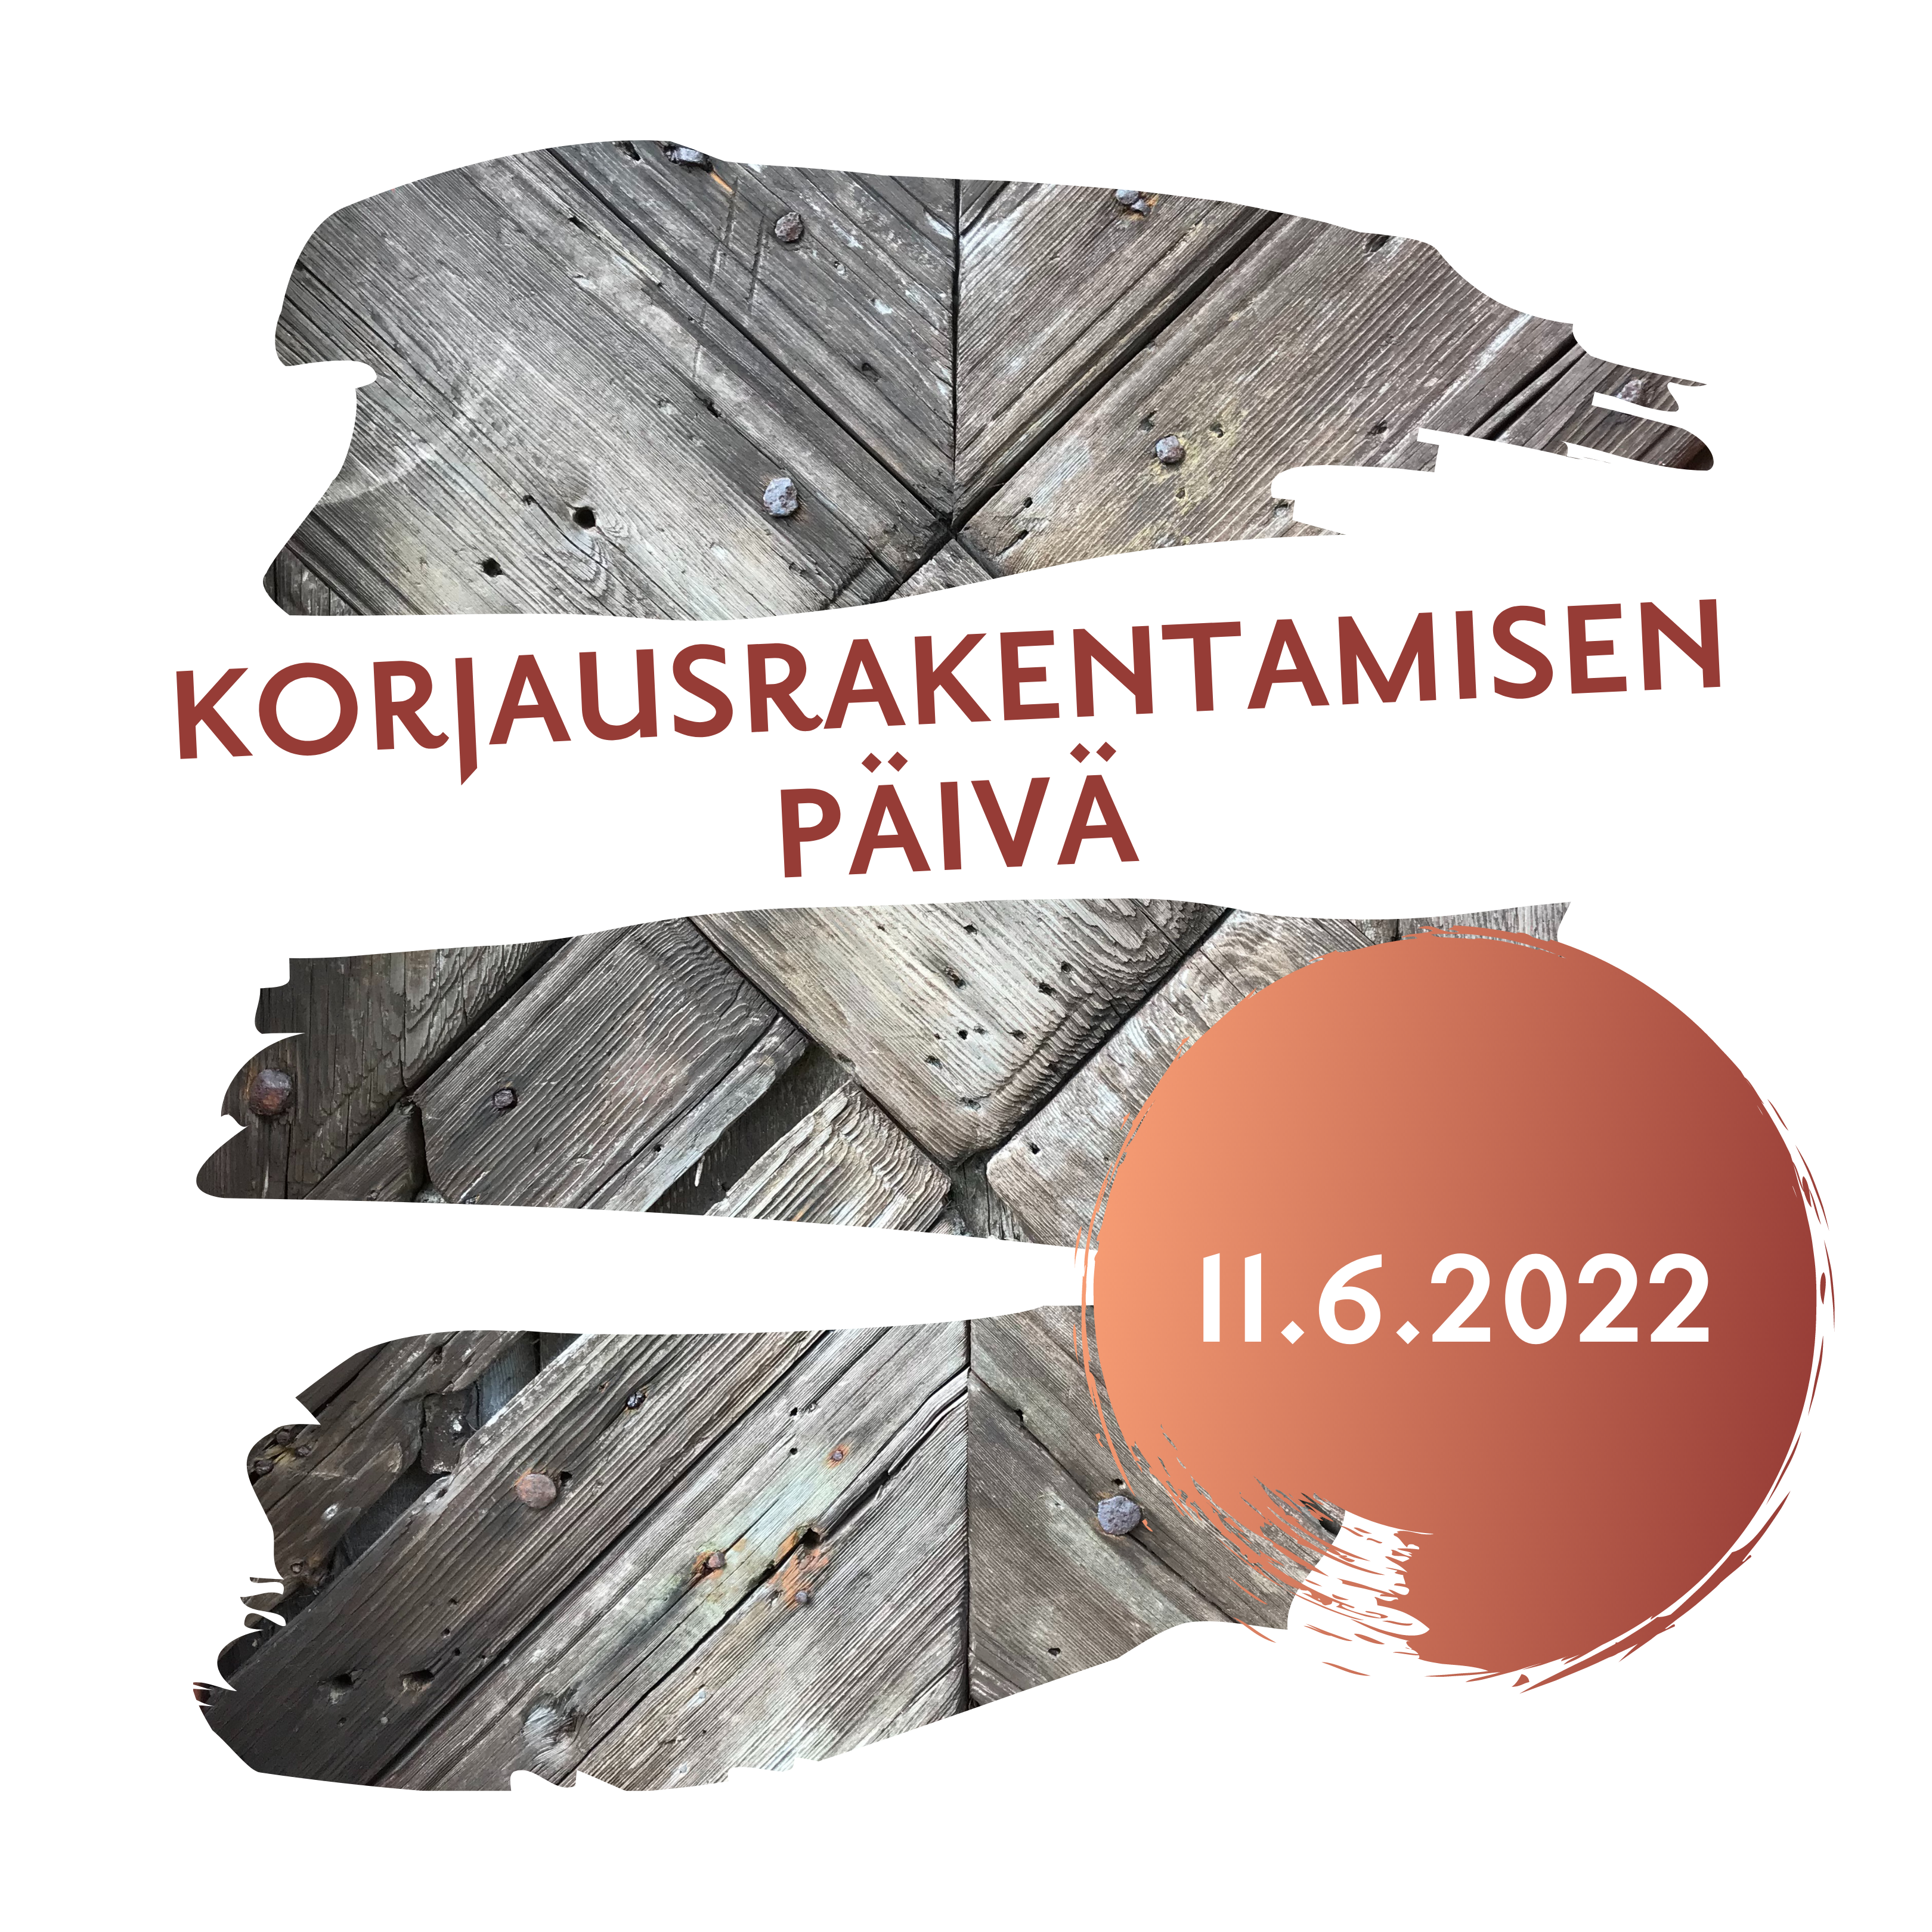 Tapahtumakuva Korjausrakentamisen päivä Forngårdenissa 11.6.2022 varten